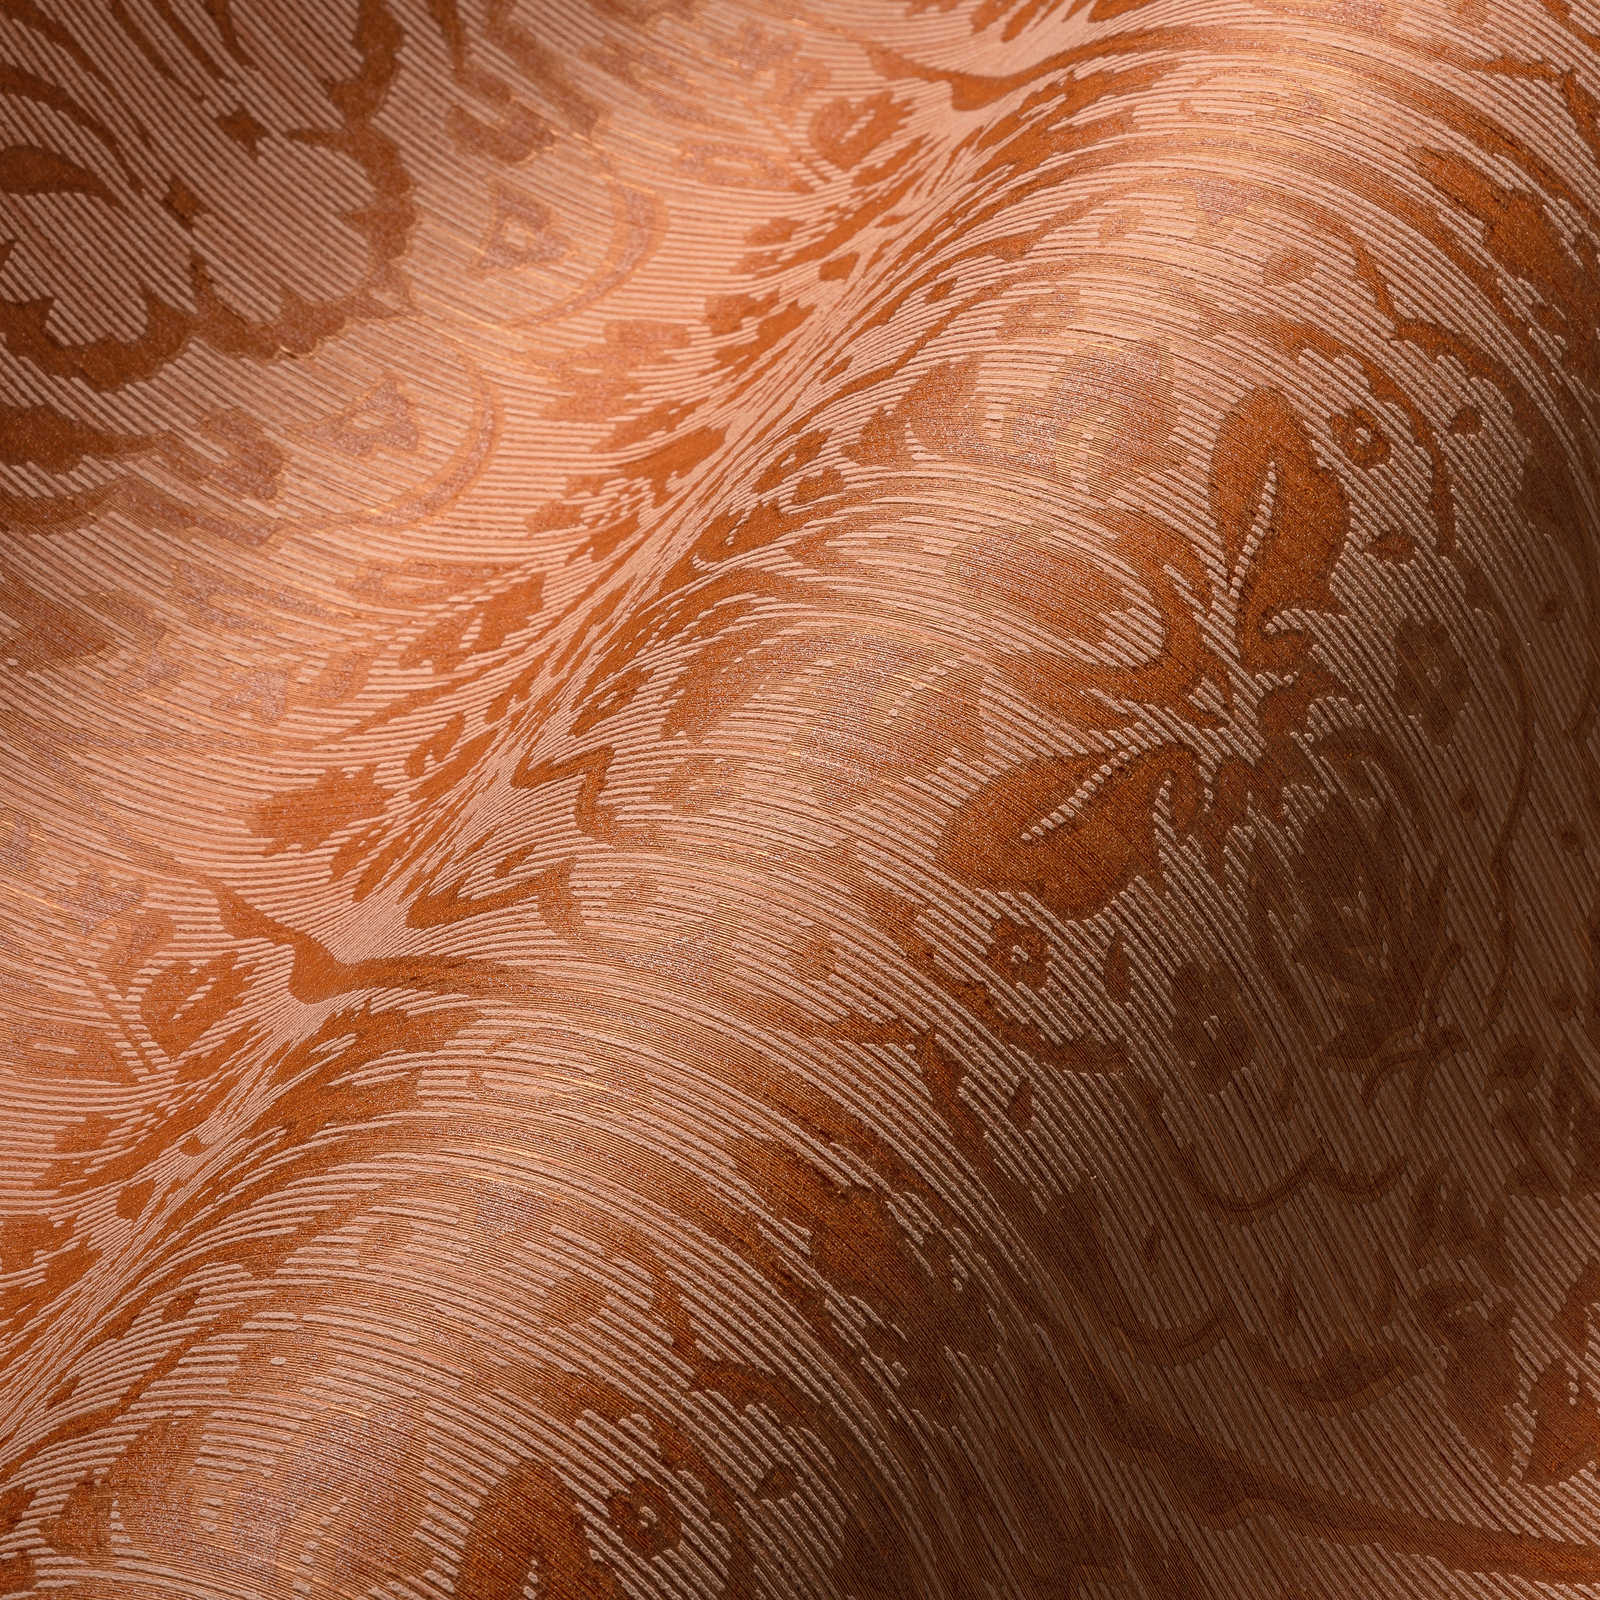             behang bloemenpatroon met dimensionaal structuureffect - oranje
        